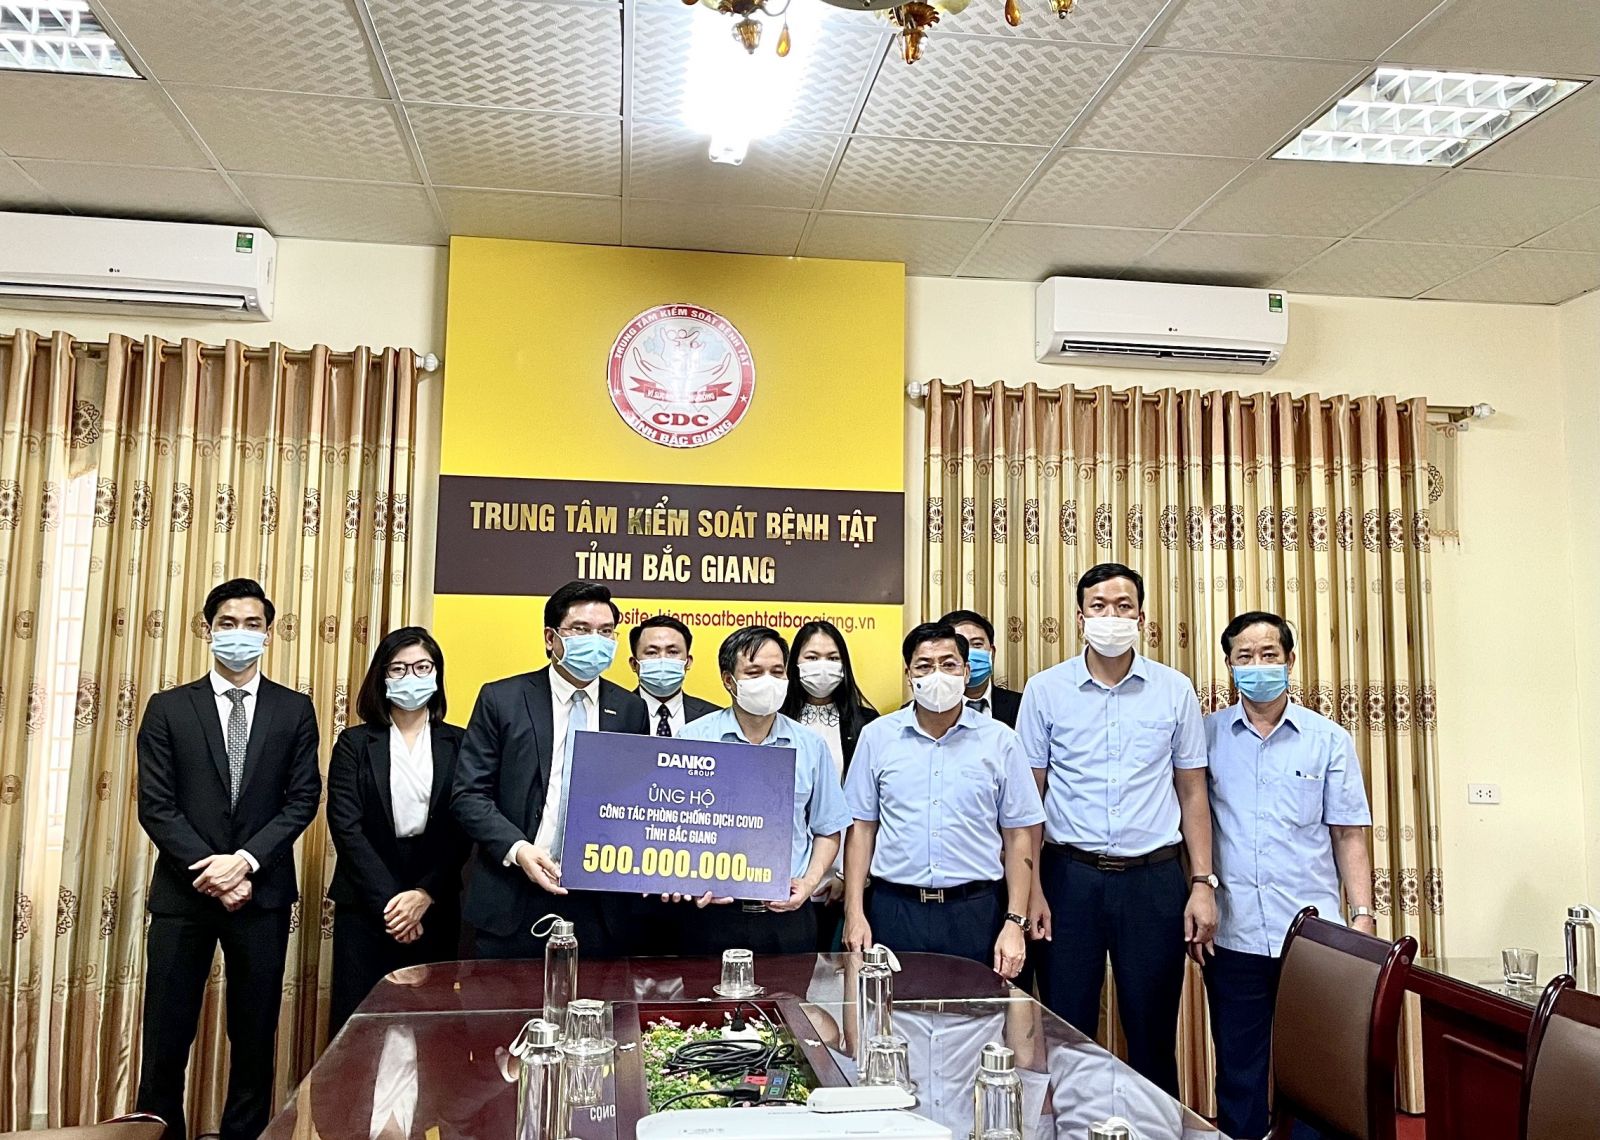 Danko Group hỗ trợ tỉnh Bắc Giang trong công tác phòng chống dịch Covid -19